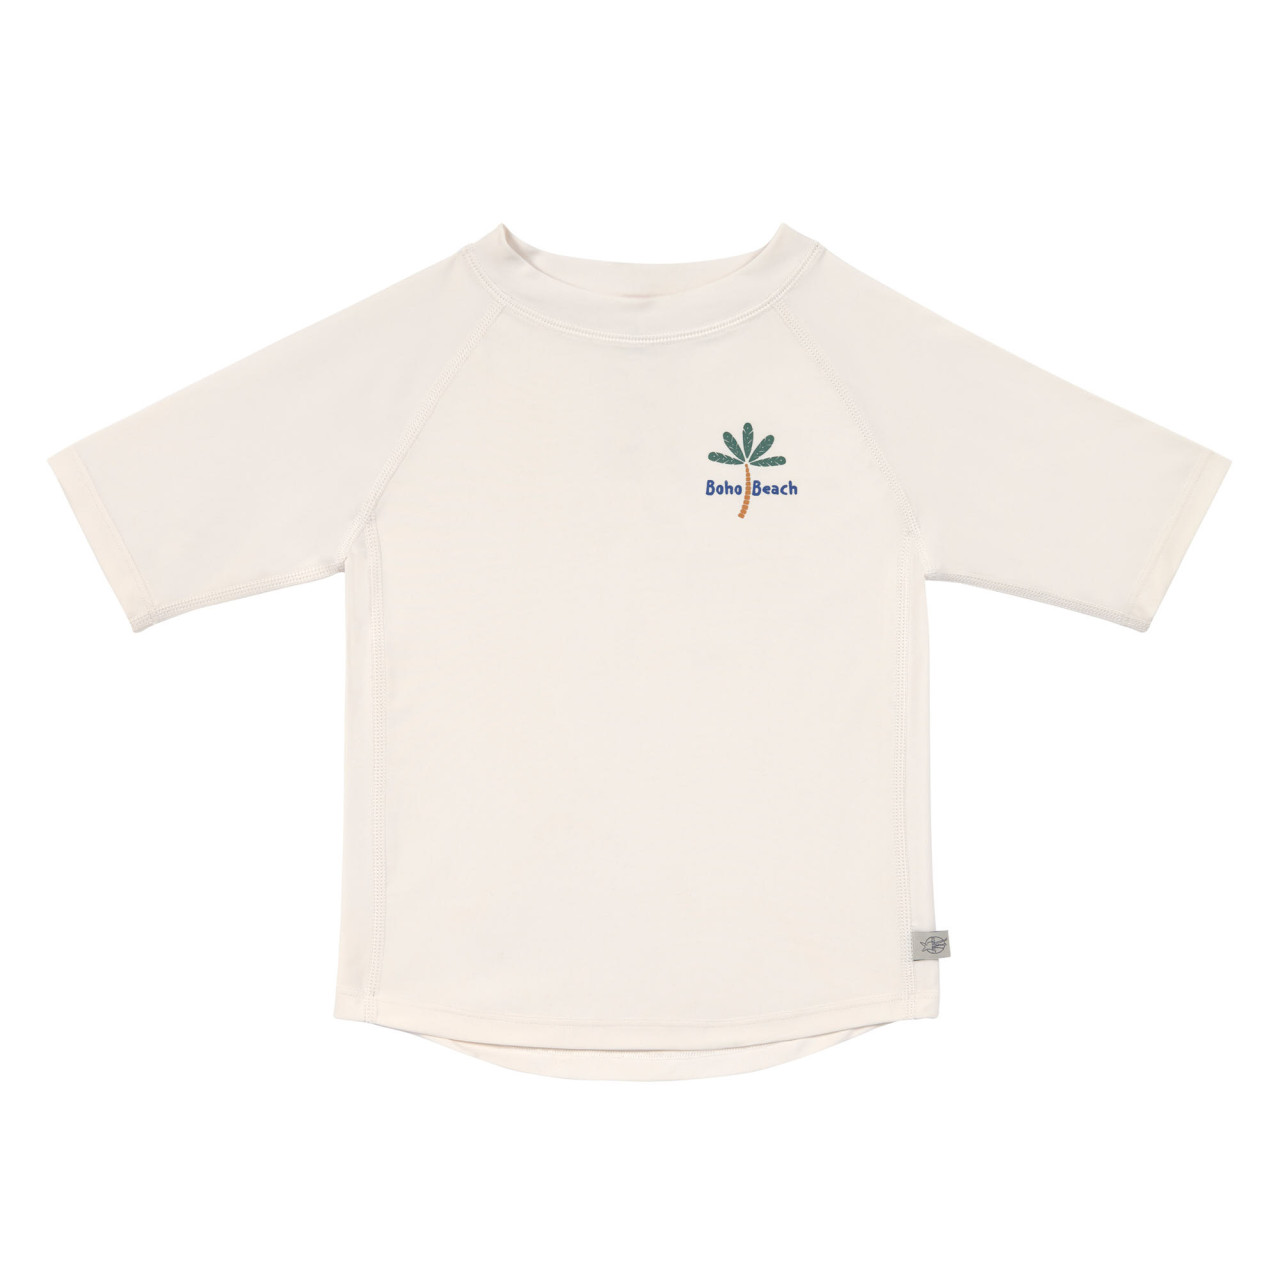 Badekleidung T-Shirt weiß 74/80 Lässig Palmen